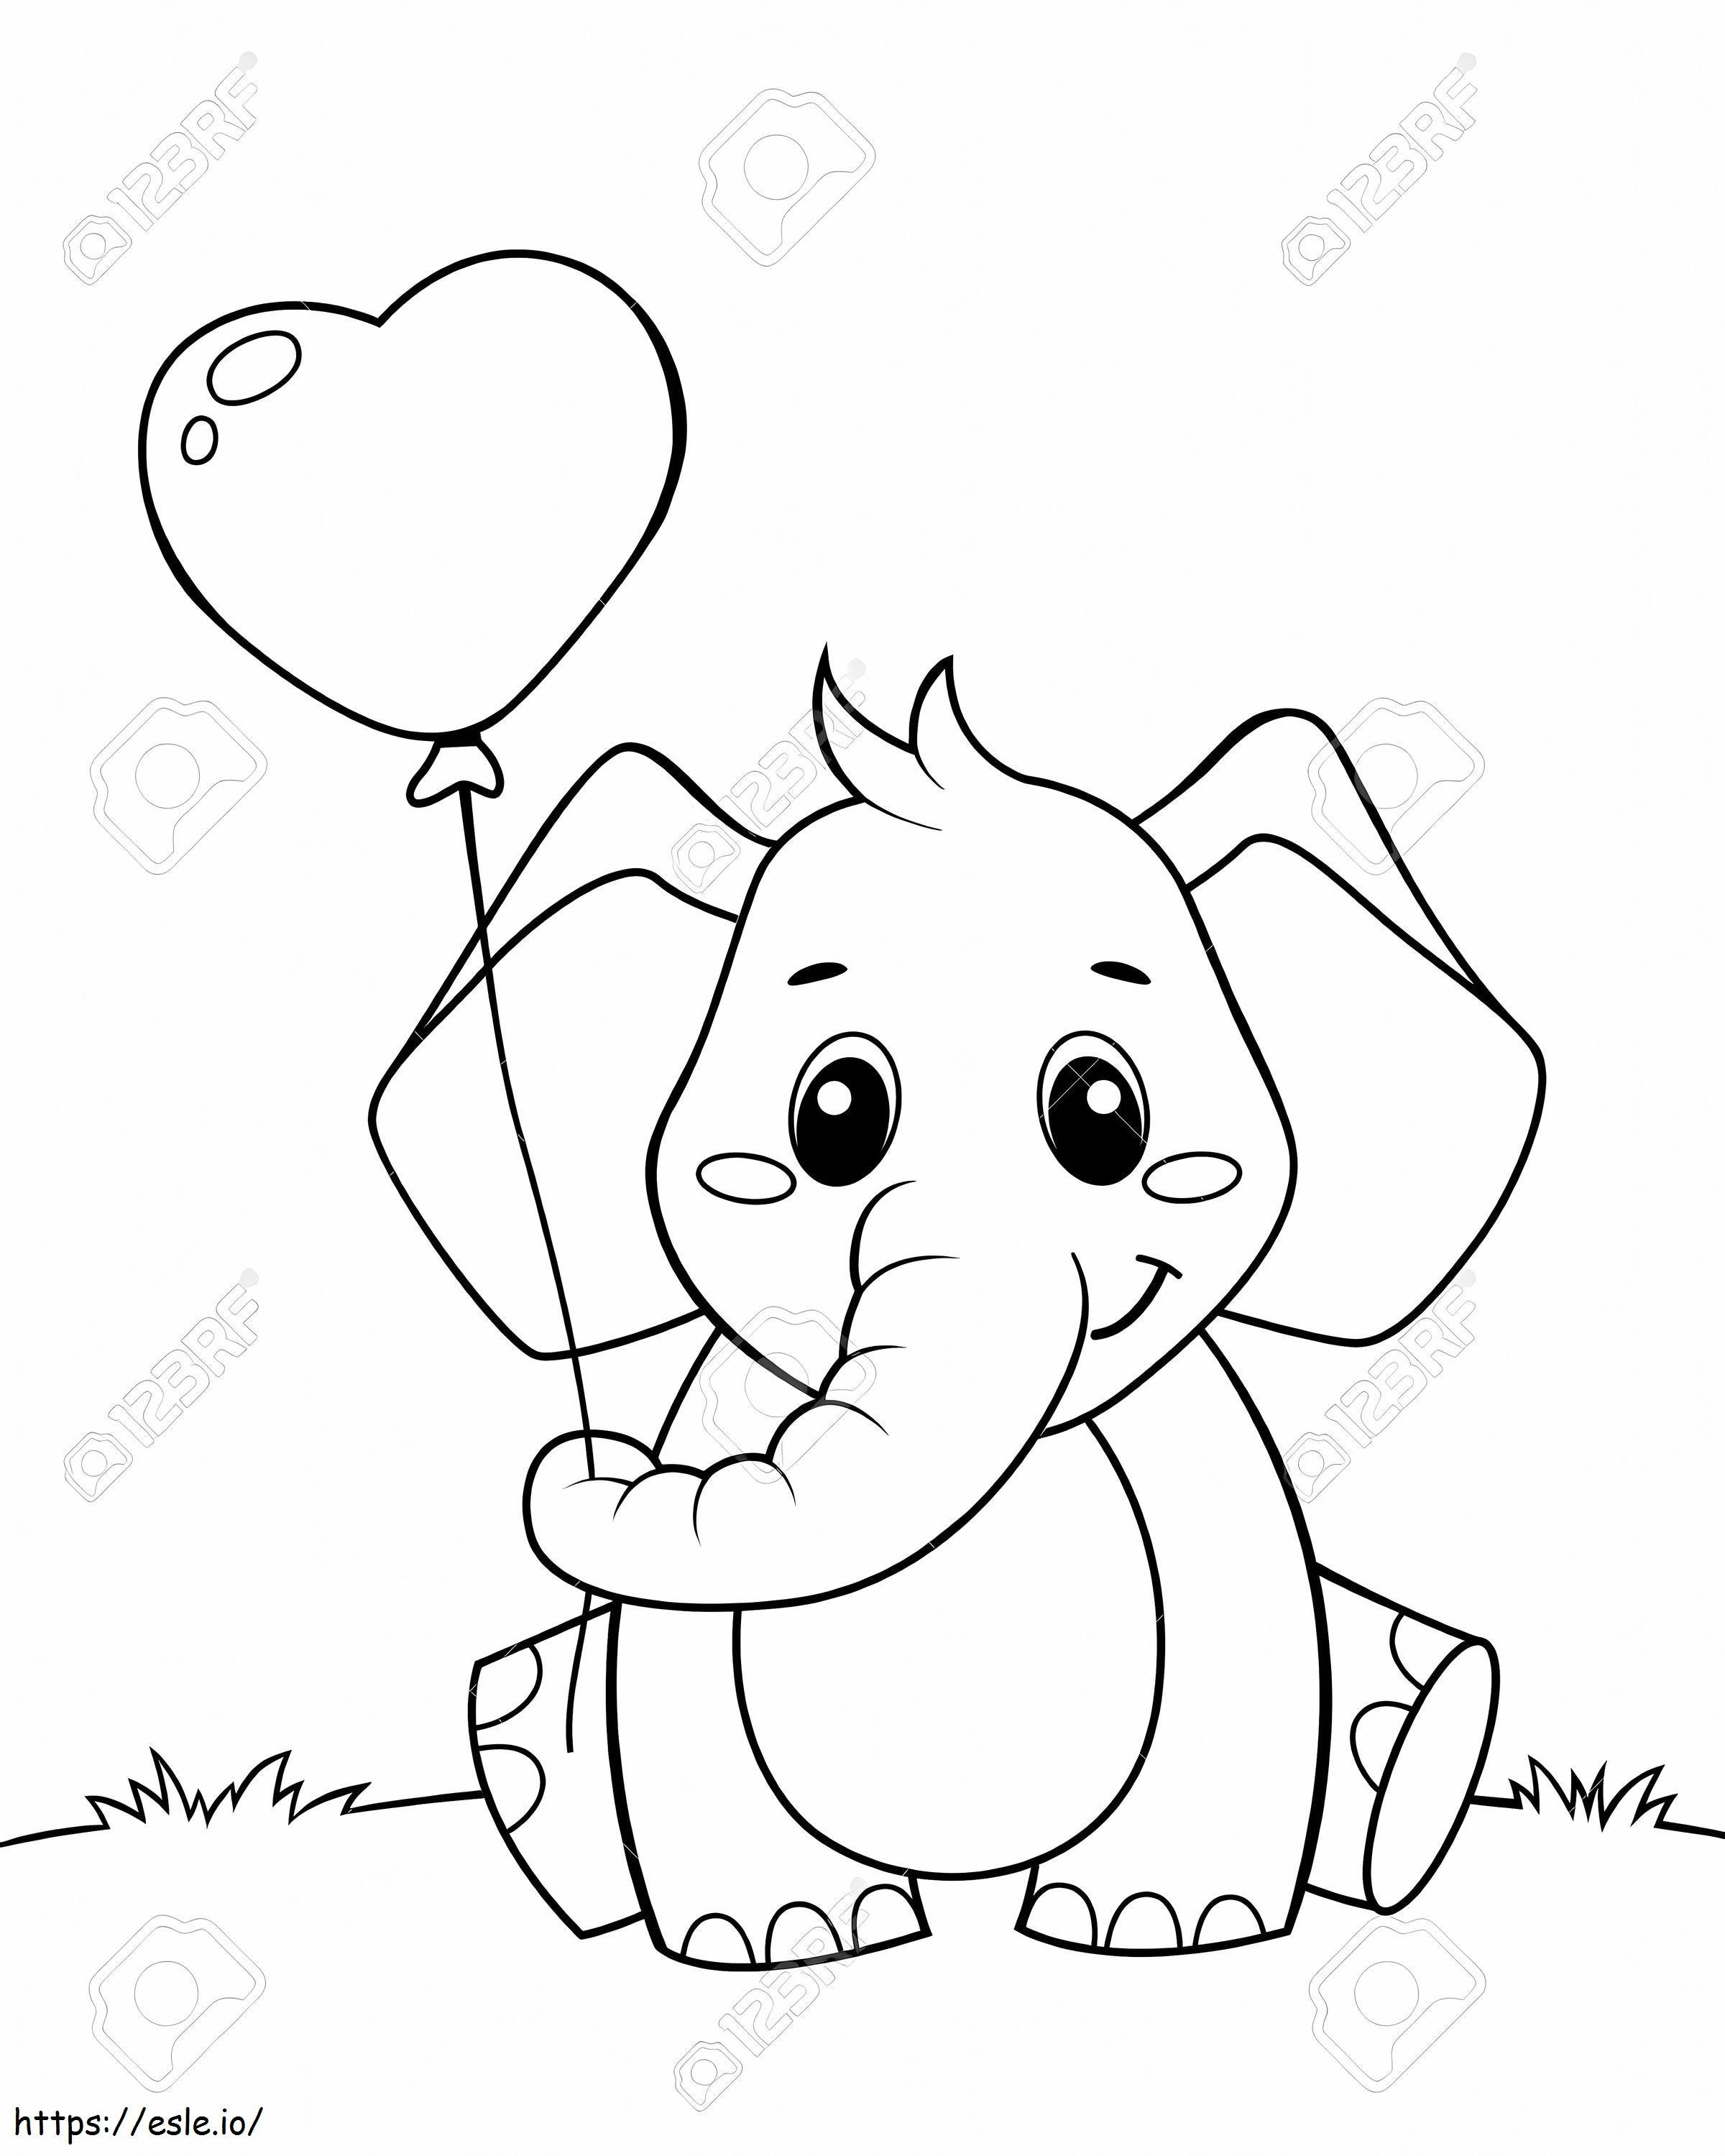  Simpatico piccolo elefante con palloncino a forma di cuore Illustrazione vettoriale in bianco e nero per la colorazione da colorare